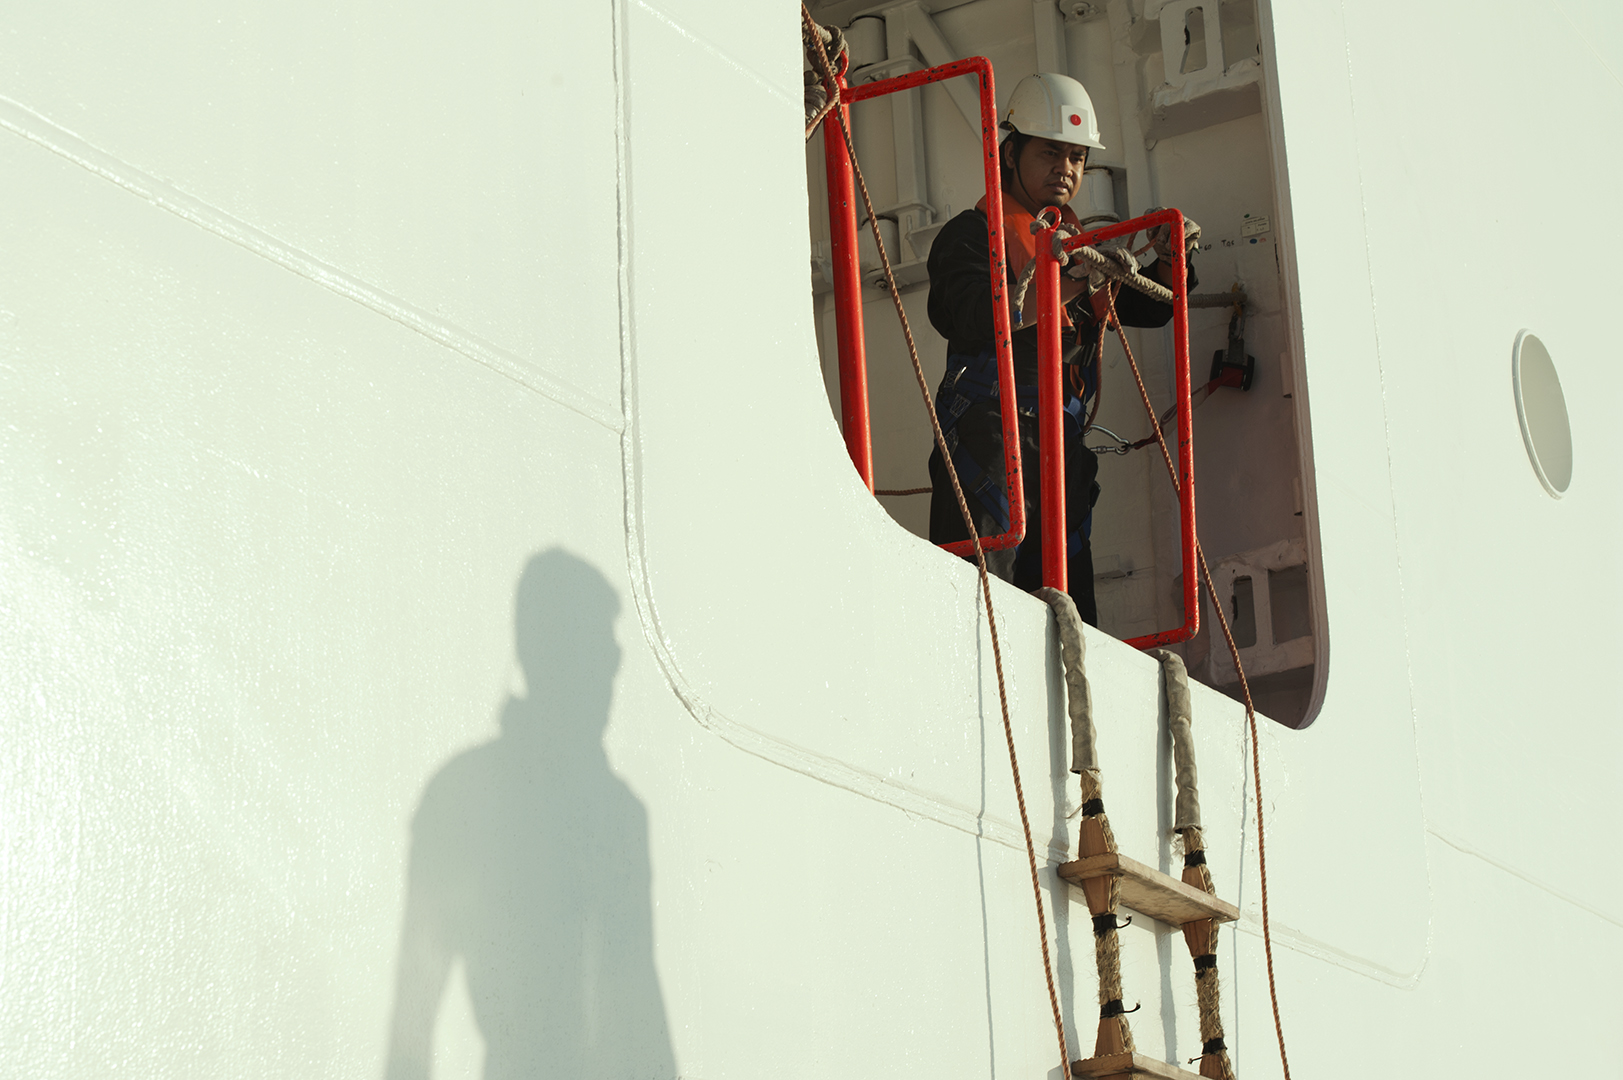  I dipendenti a bordo delle navi sono per la maggior parte filippini, seguiti da indiani e indonesiani. Civitavecchia, 2014. (Patrizia Pace) 